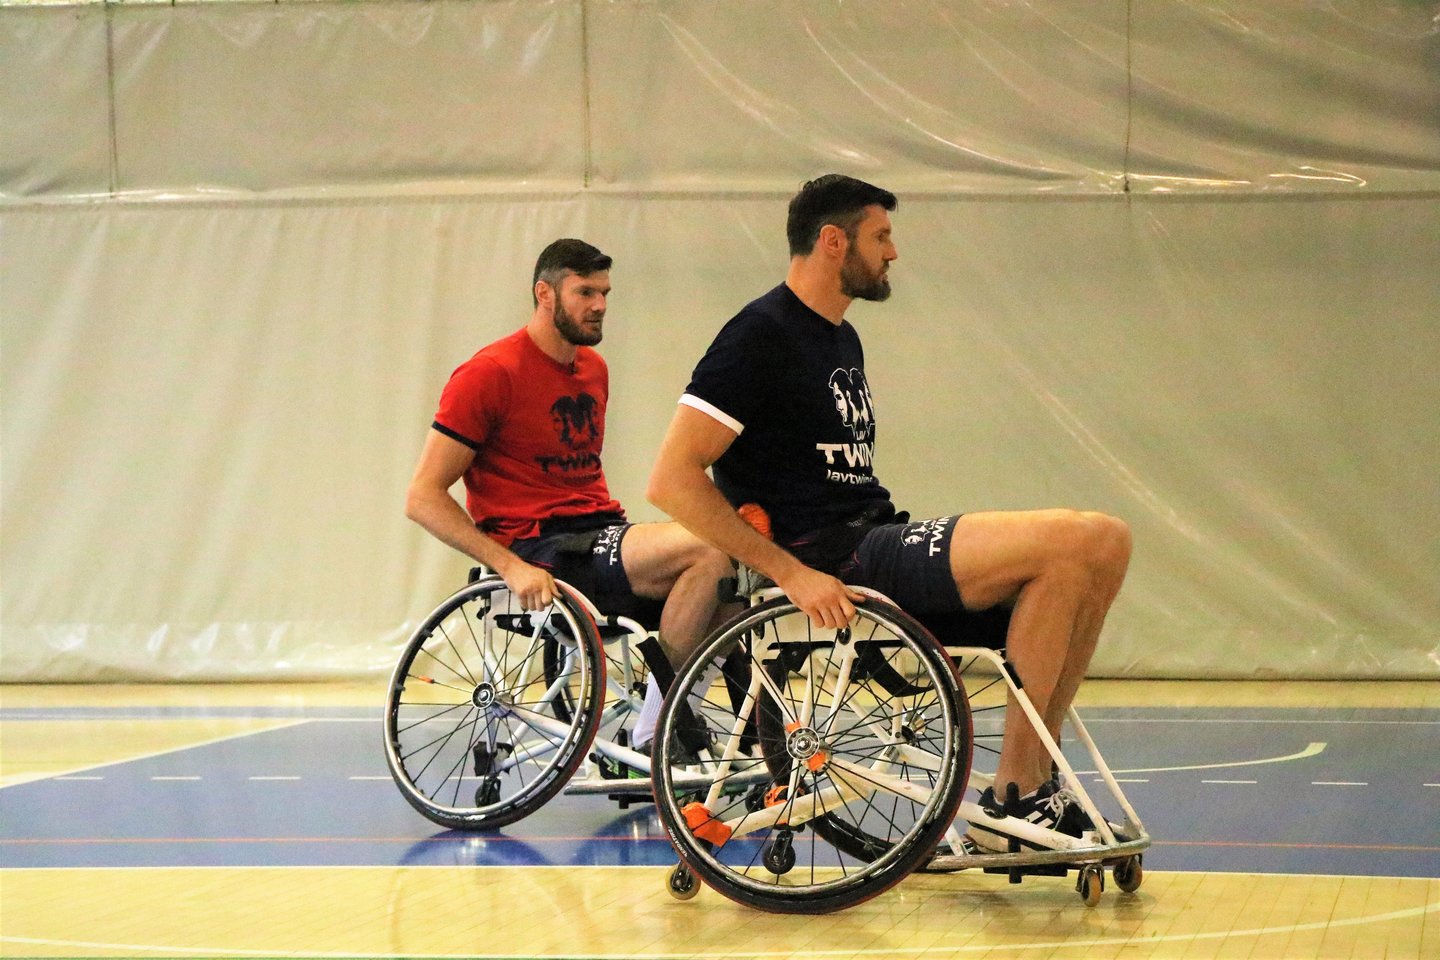  Broliai Lavrinovičiai prieš brolius Skučius vežimėlių krepšinyje<br> paralimpic.lt nuotr.